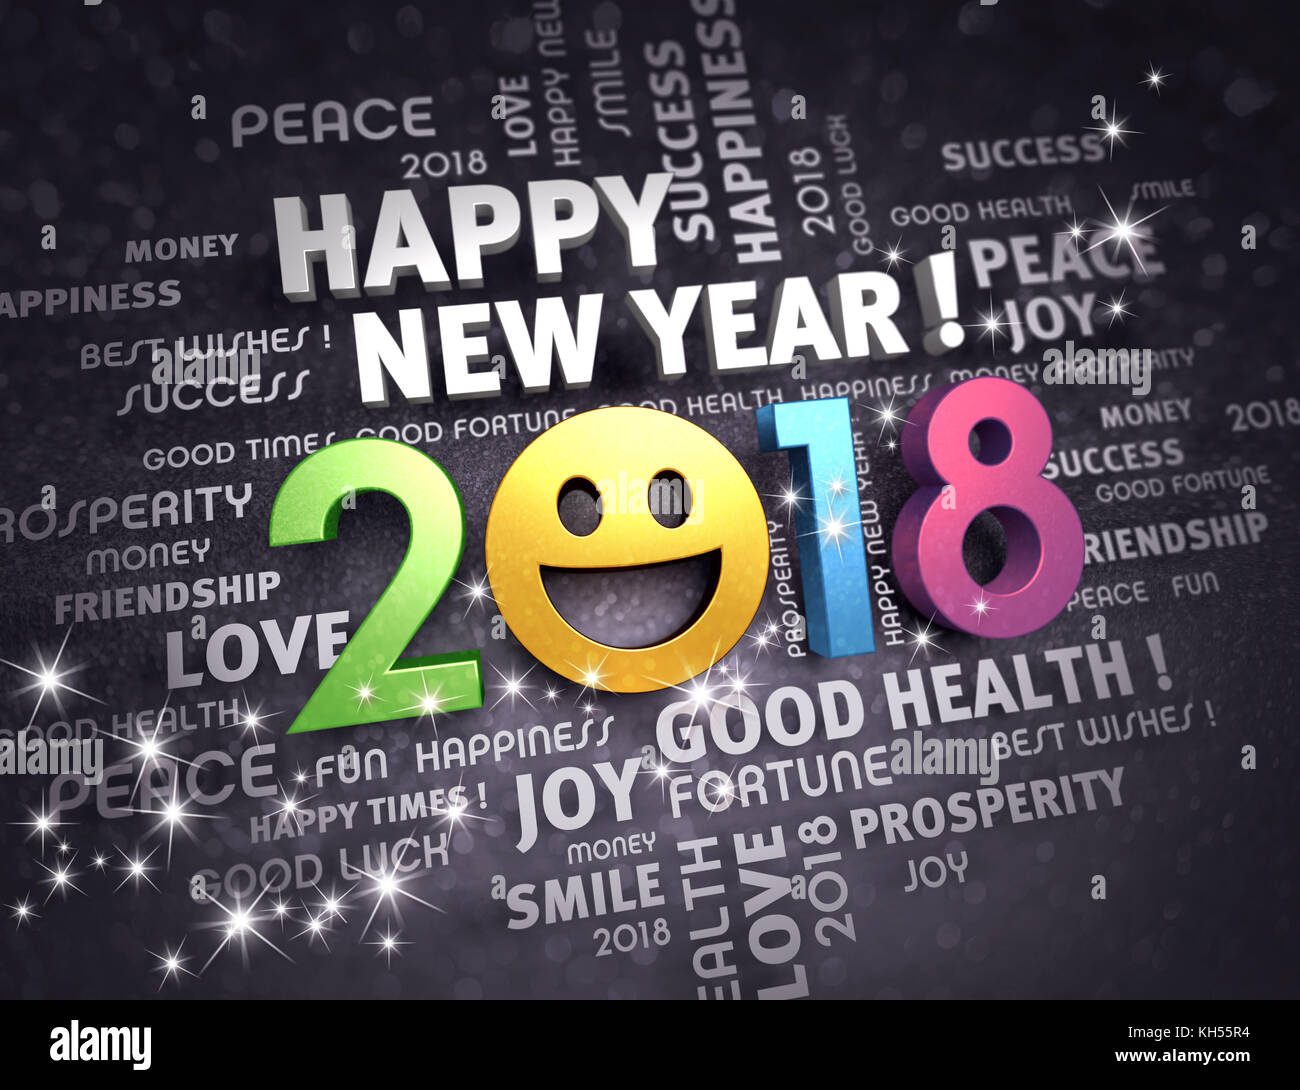 Felice anno nuovo 2018 data con una faccia sorridente e parole di saluto, su una scintillante sfondo nero - 3d illustrazione Foto Stock